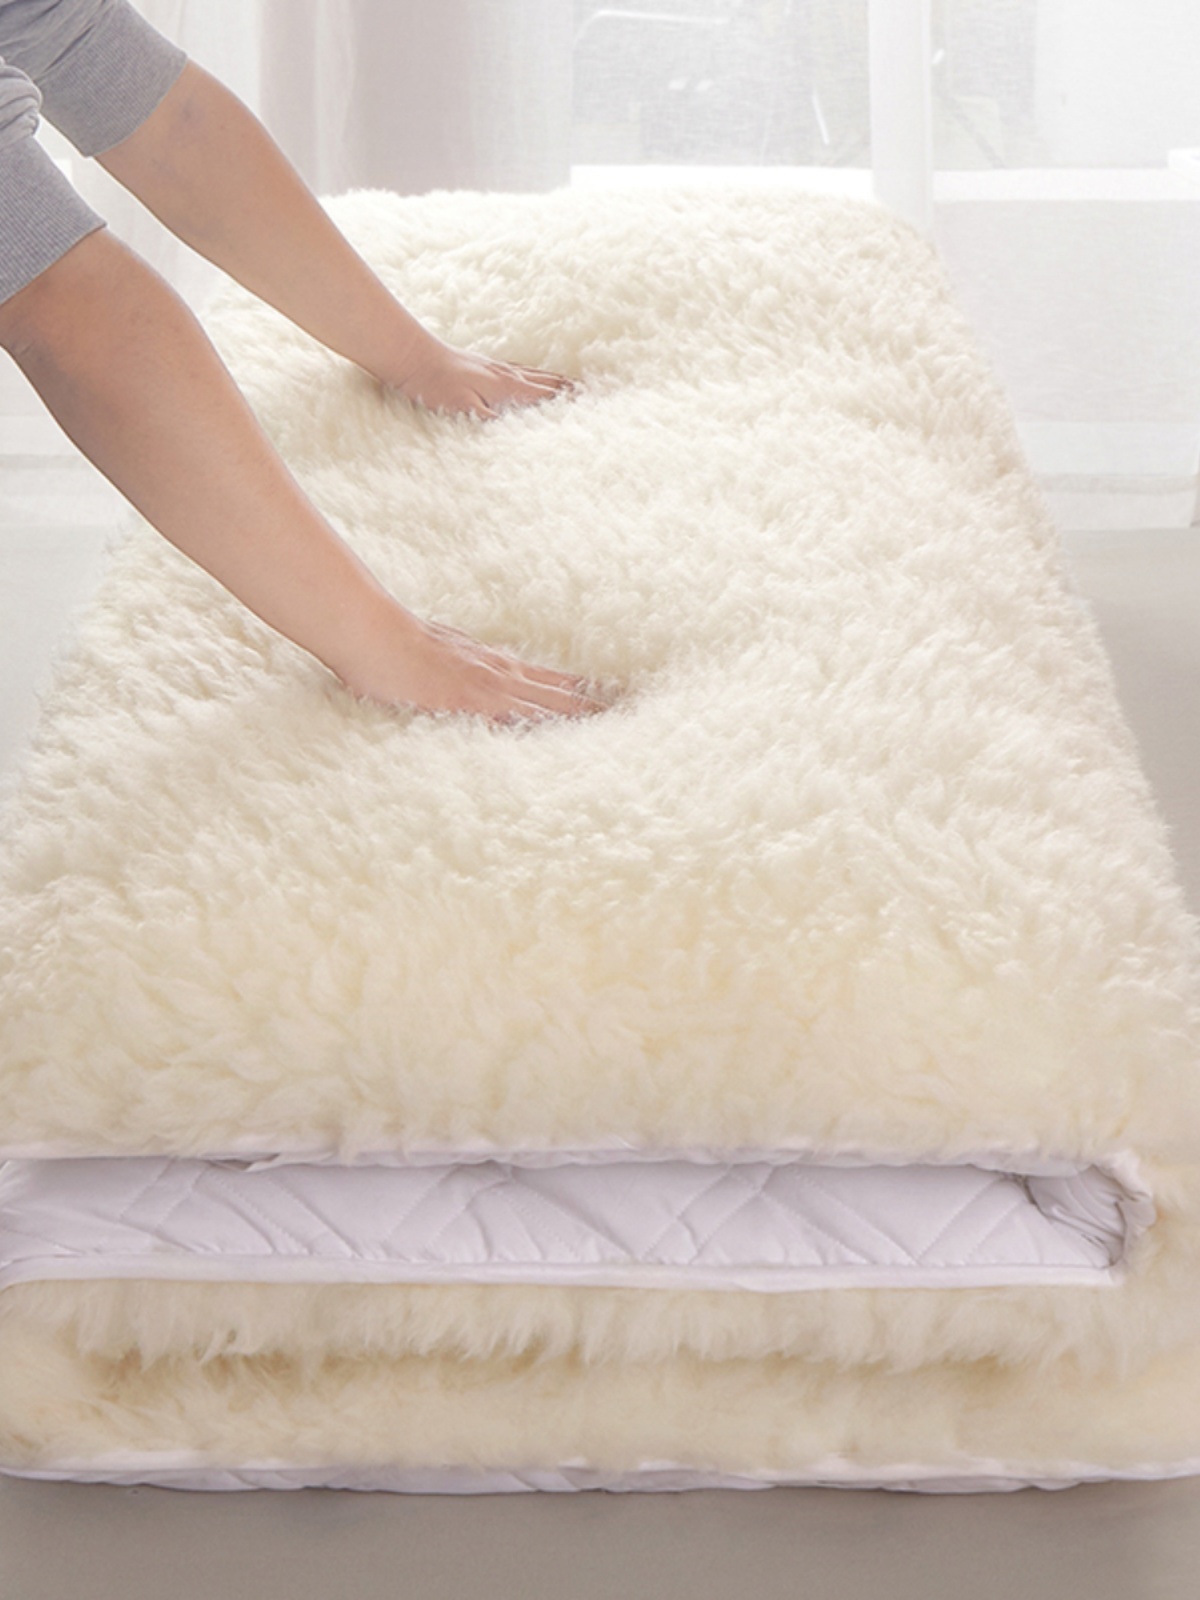 冬季加厚保暖純澳洲羊毛床墊超柔羊羔絨毛毯雙面可用柔軟舒適 (4.9折)